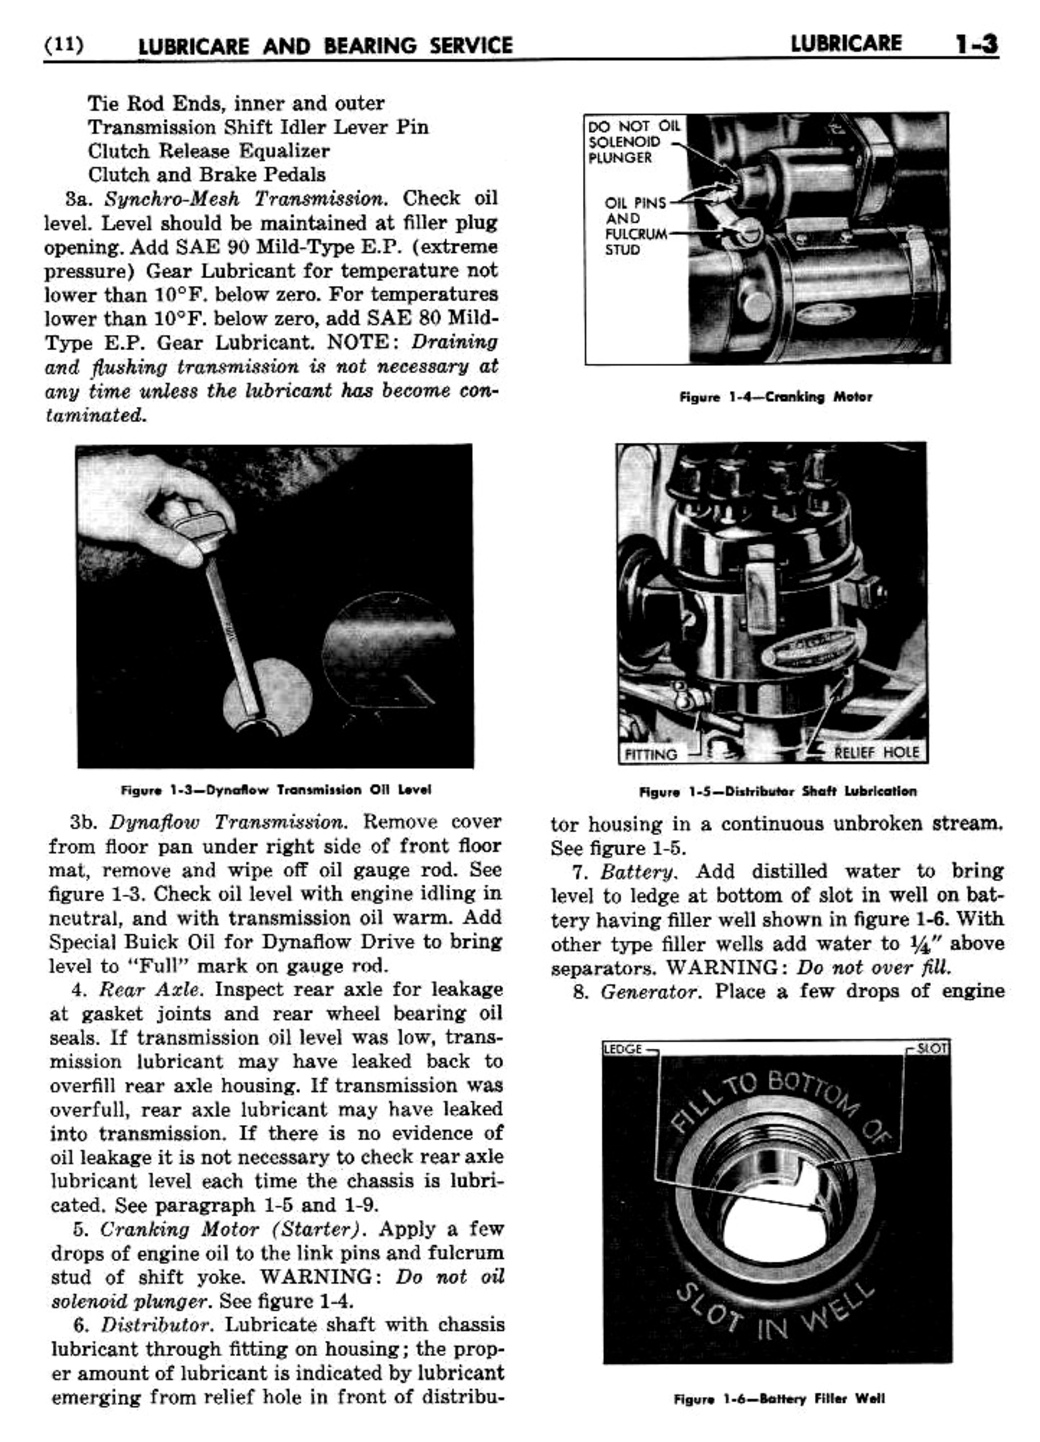 n_02 1948 Buick Shop Manual - Lubricare-003-003.jpg